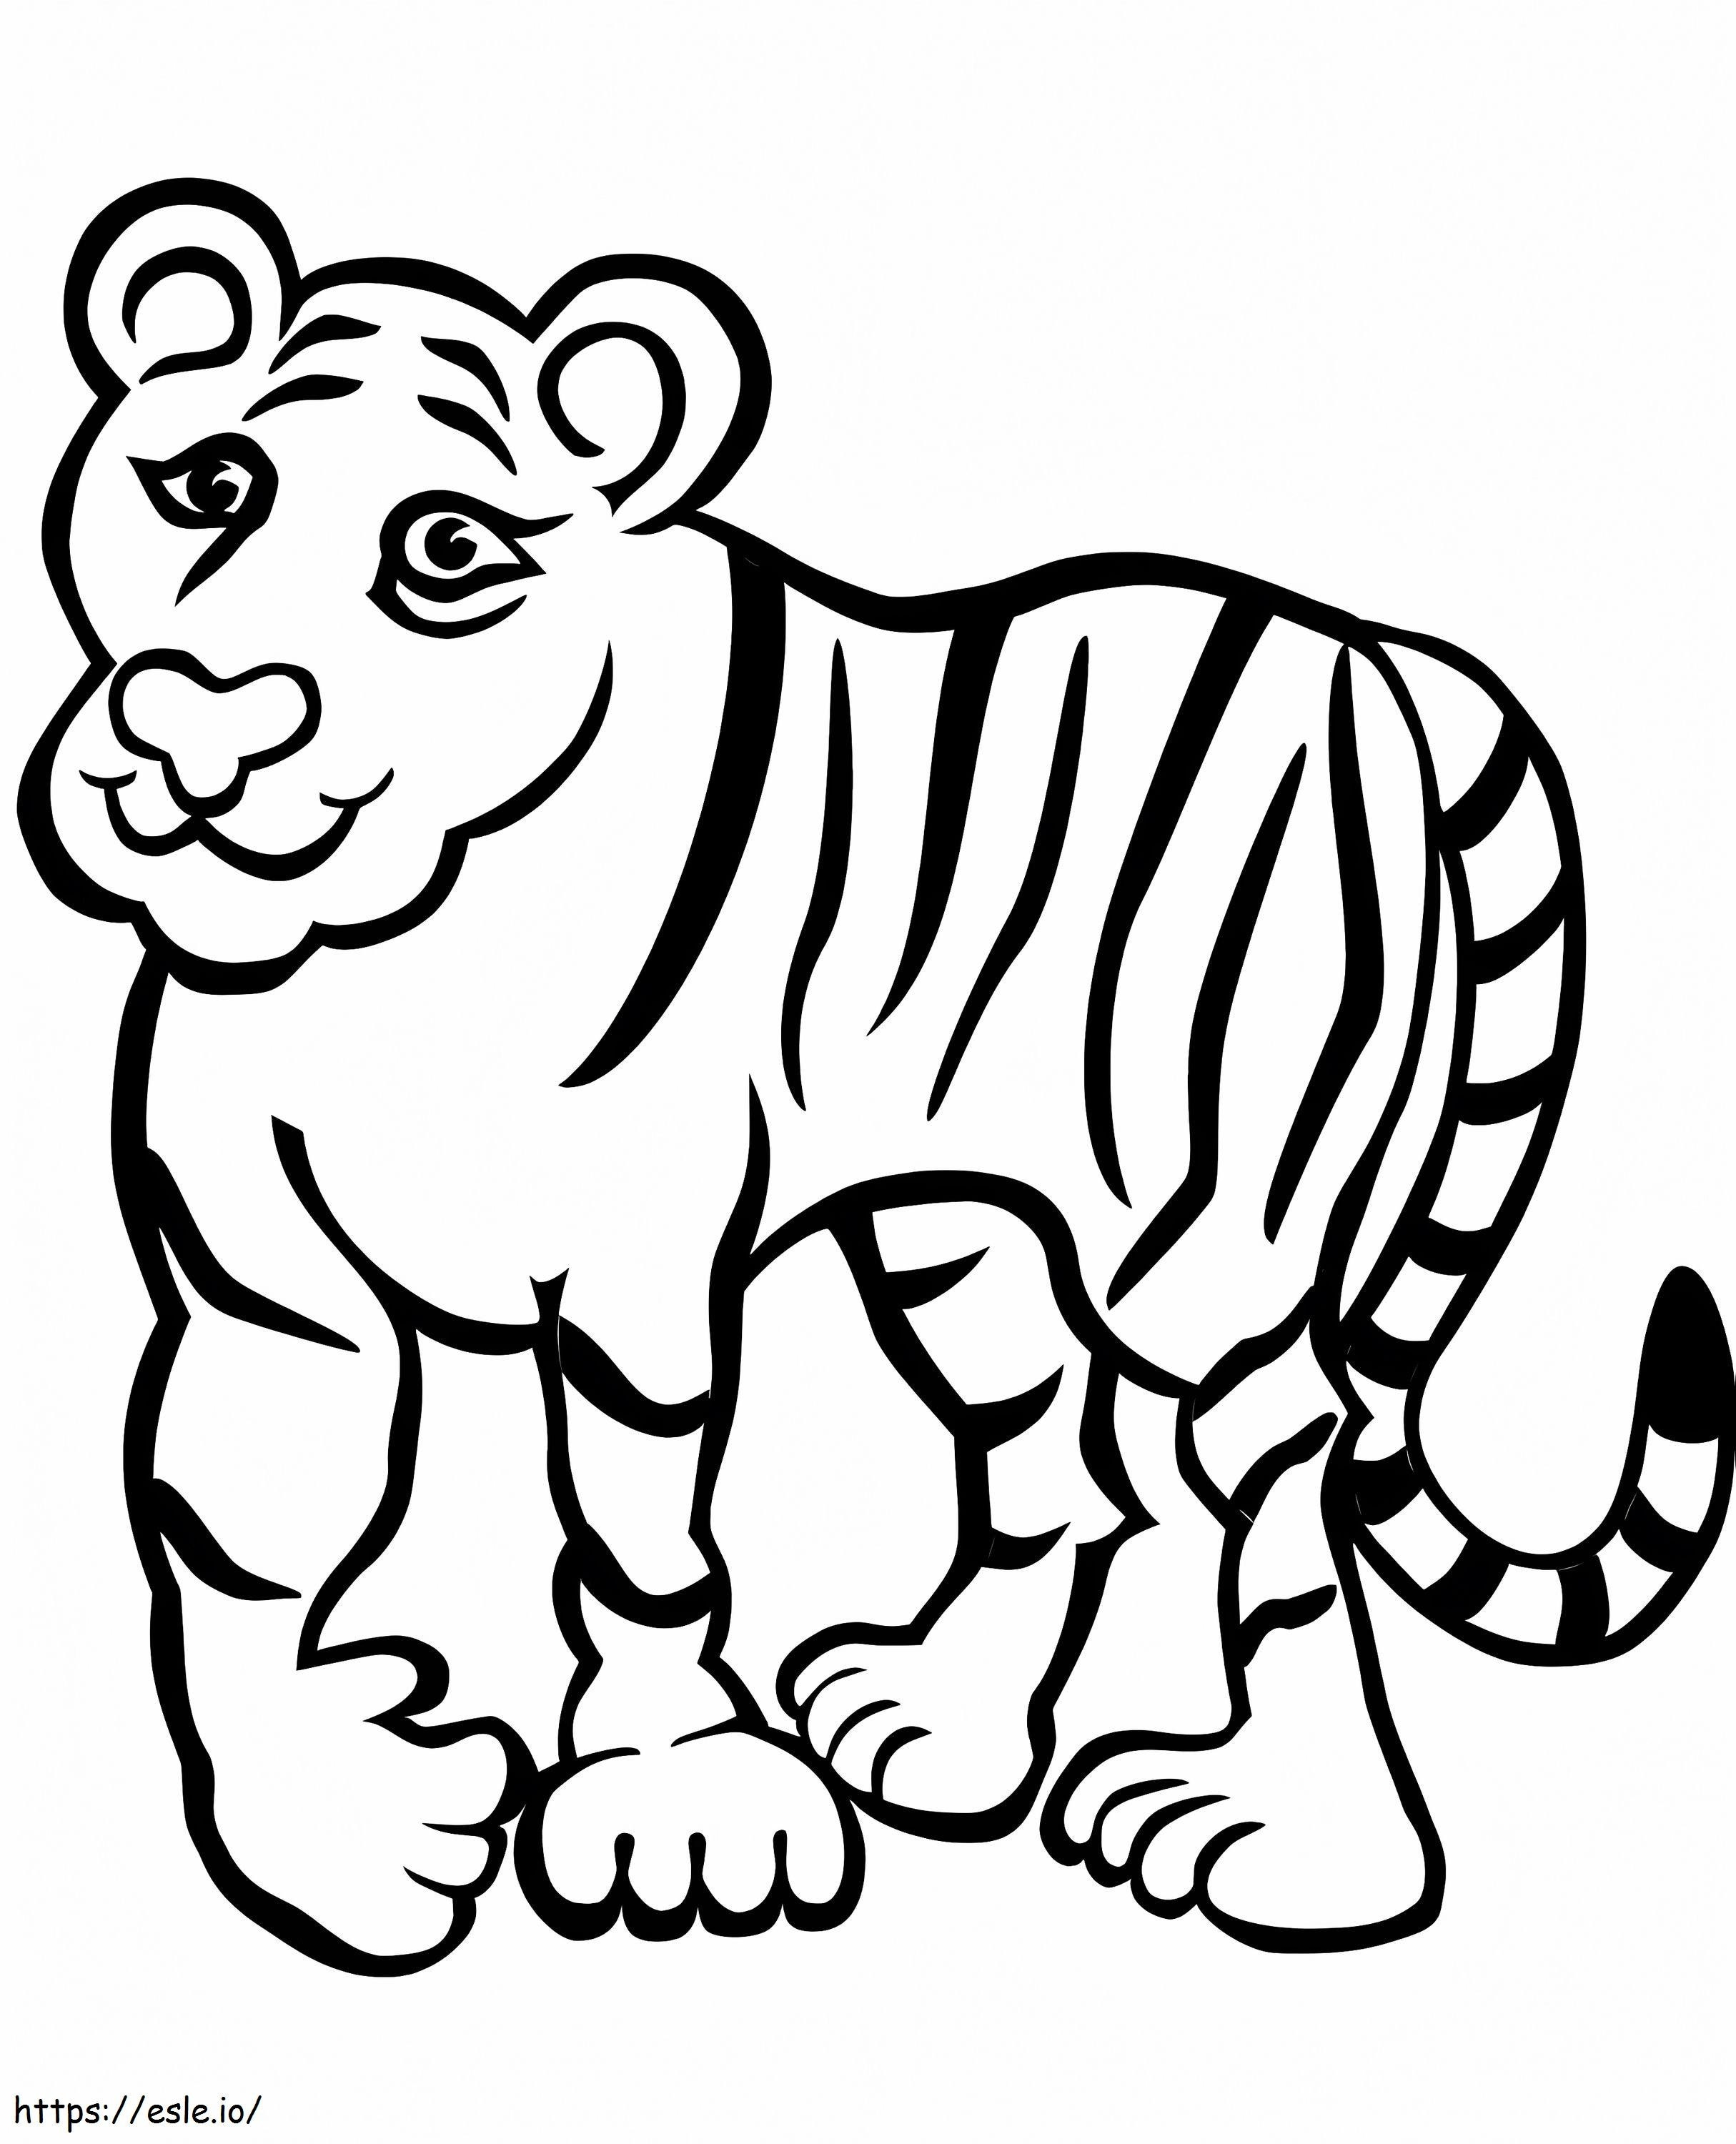 Un tigre divertido para colorear